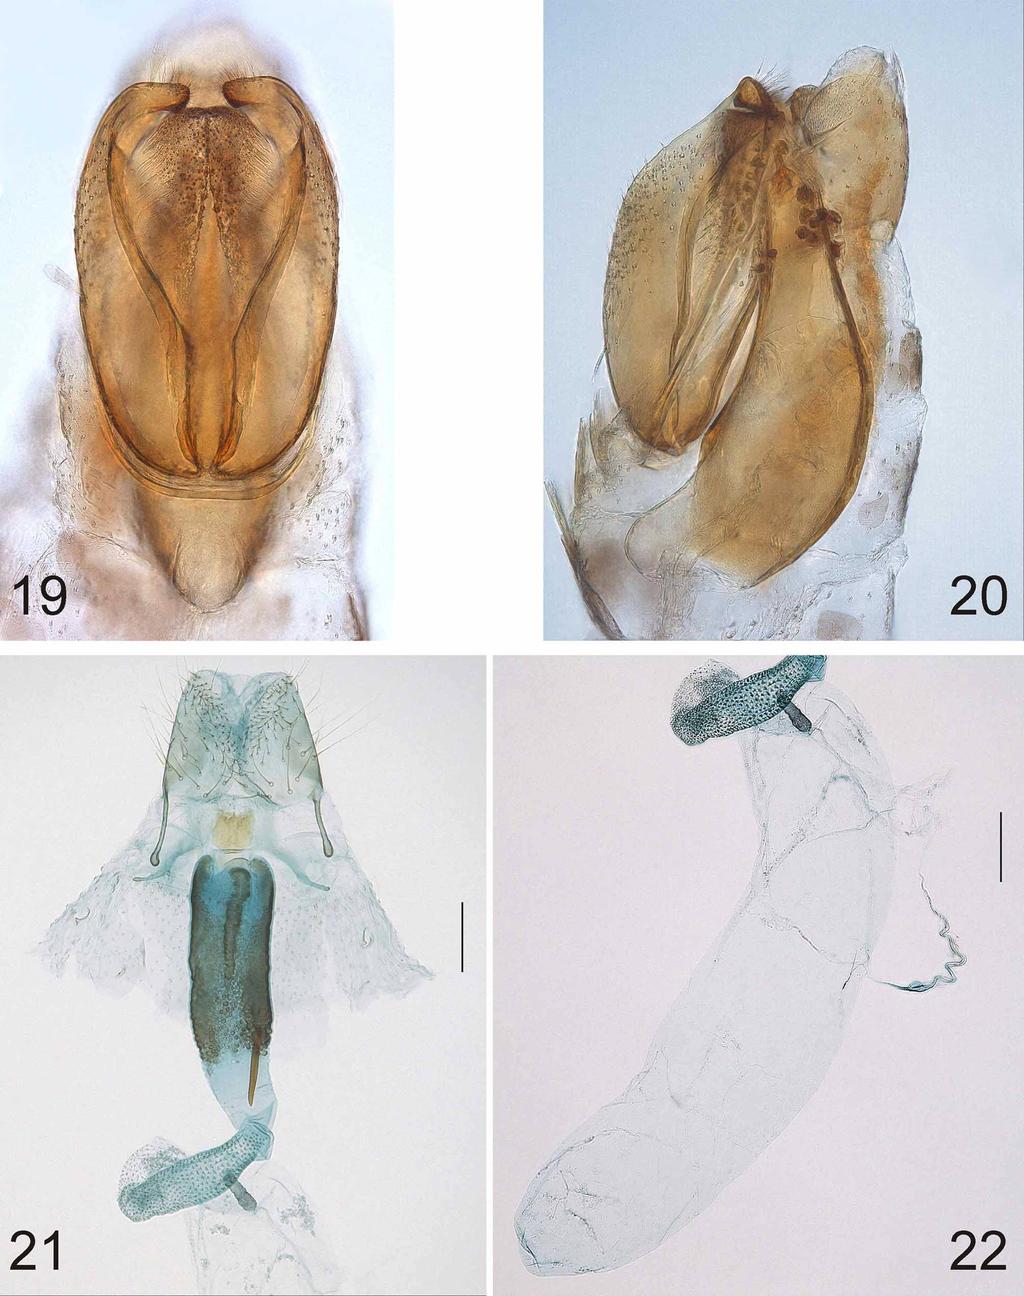 FIGURES 19 22. Urodeta absidata, sp. n. 19, male genitalia, ventral view; 20, male genitalia, lateral view. Holotype, in glycerol before permanent mounting in Euparal.